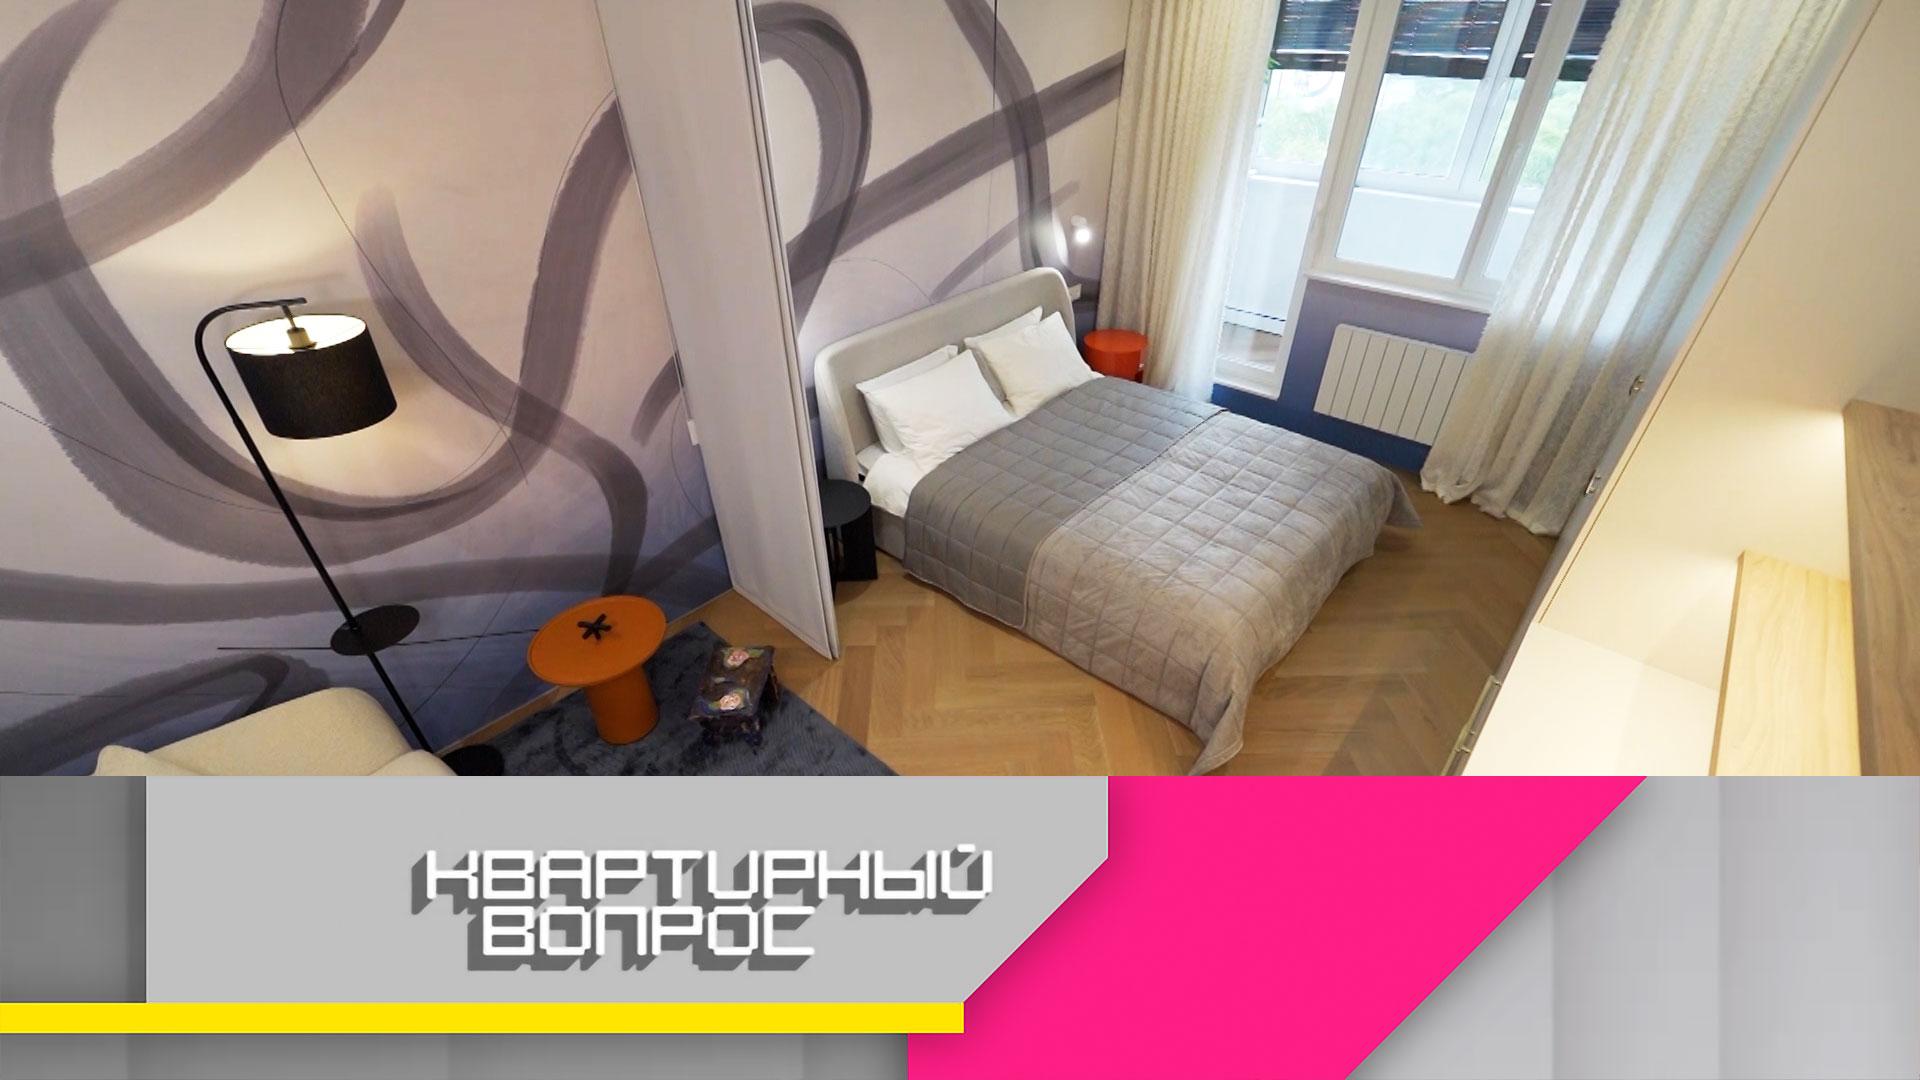 Спальня-гостиная с абстрактной росписью для семьи путешественников | Квартирный вопрос